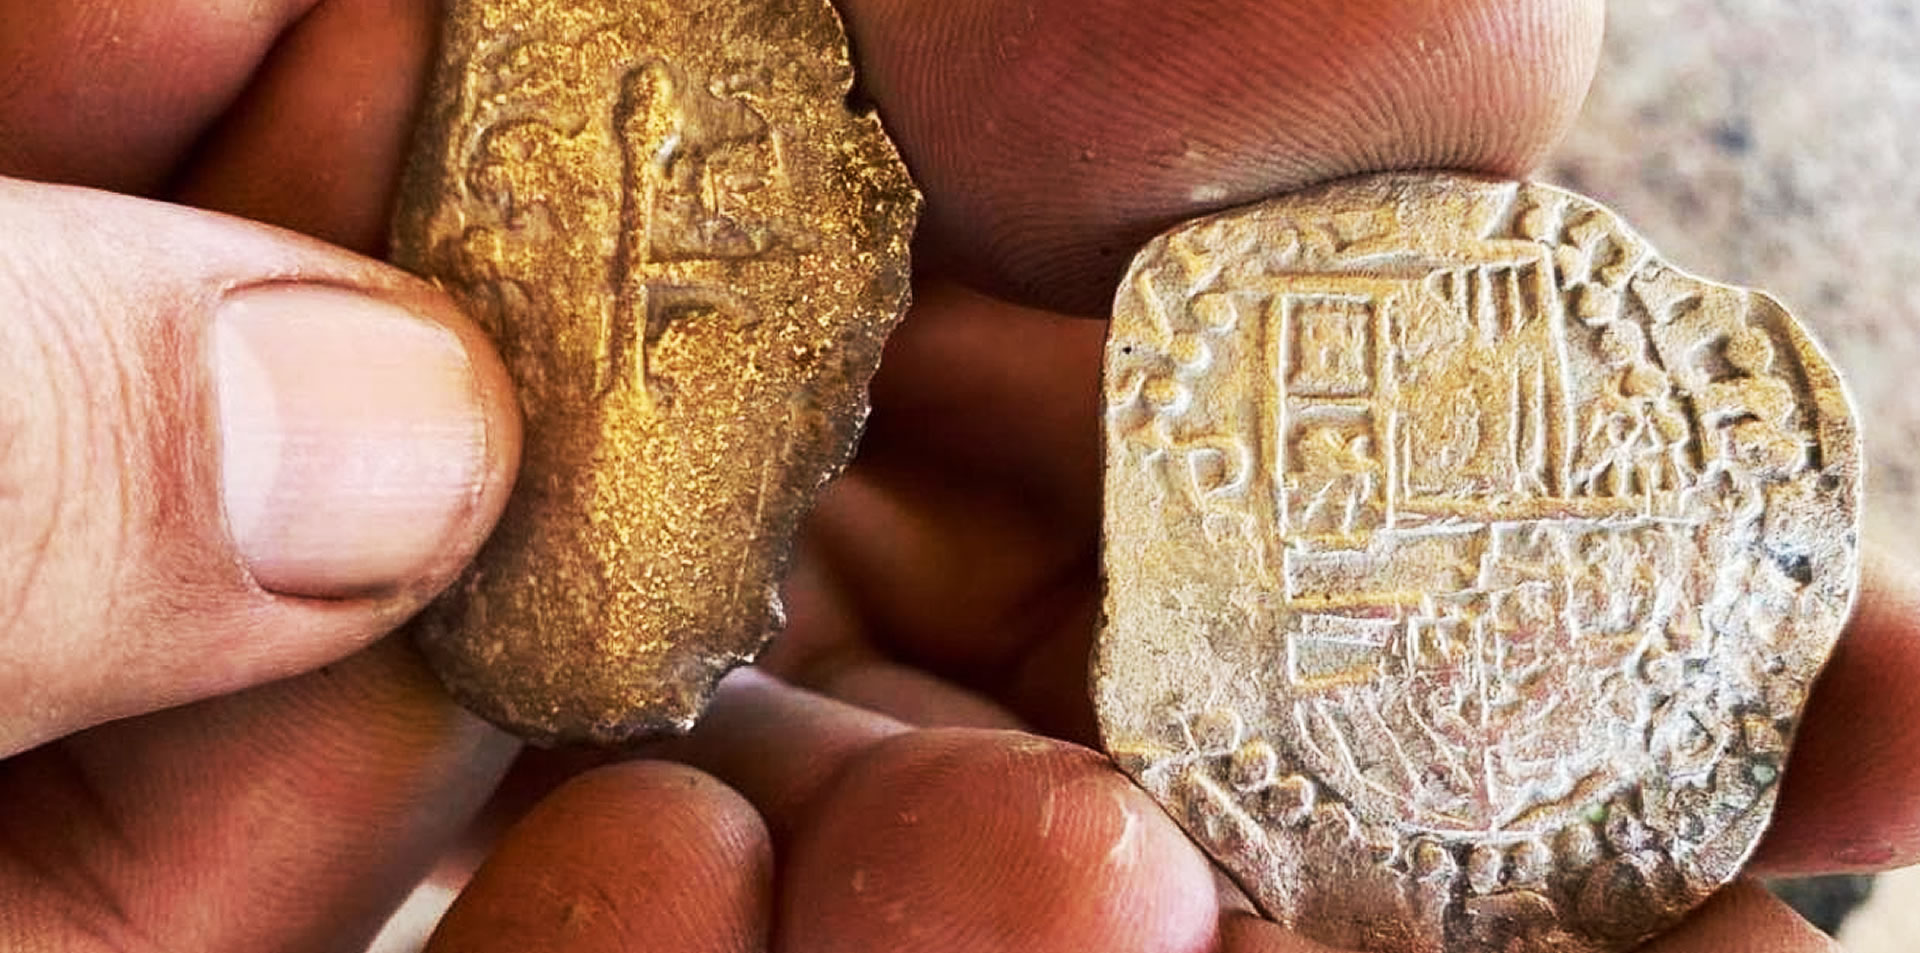 Caçadores de tesouros encontram moedas raras em praia da Flórida